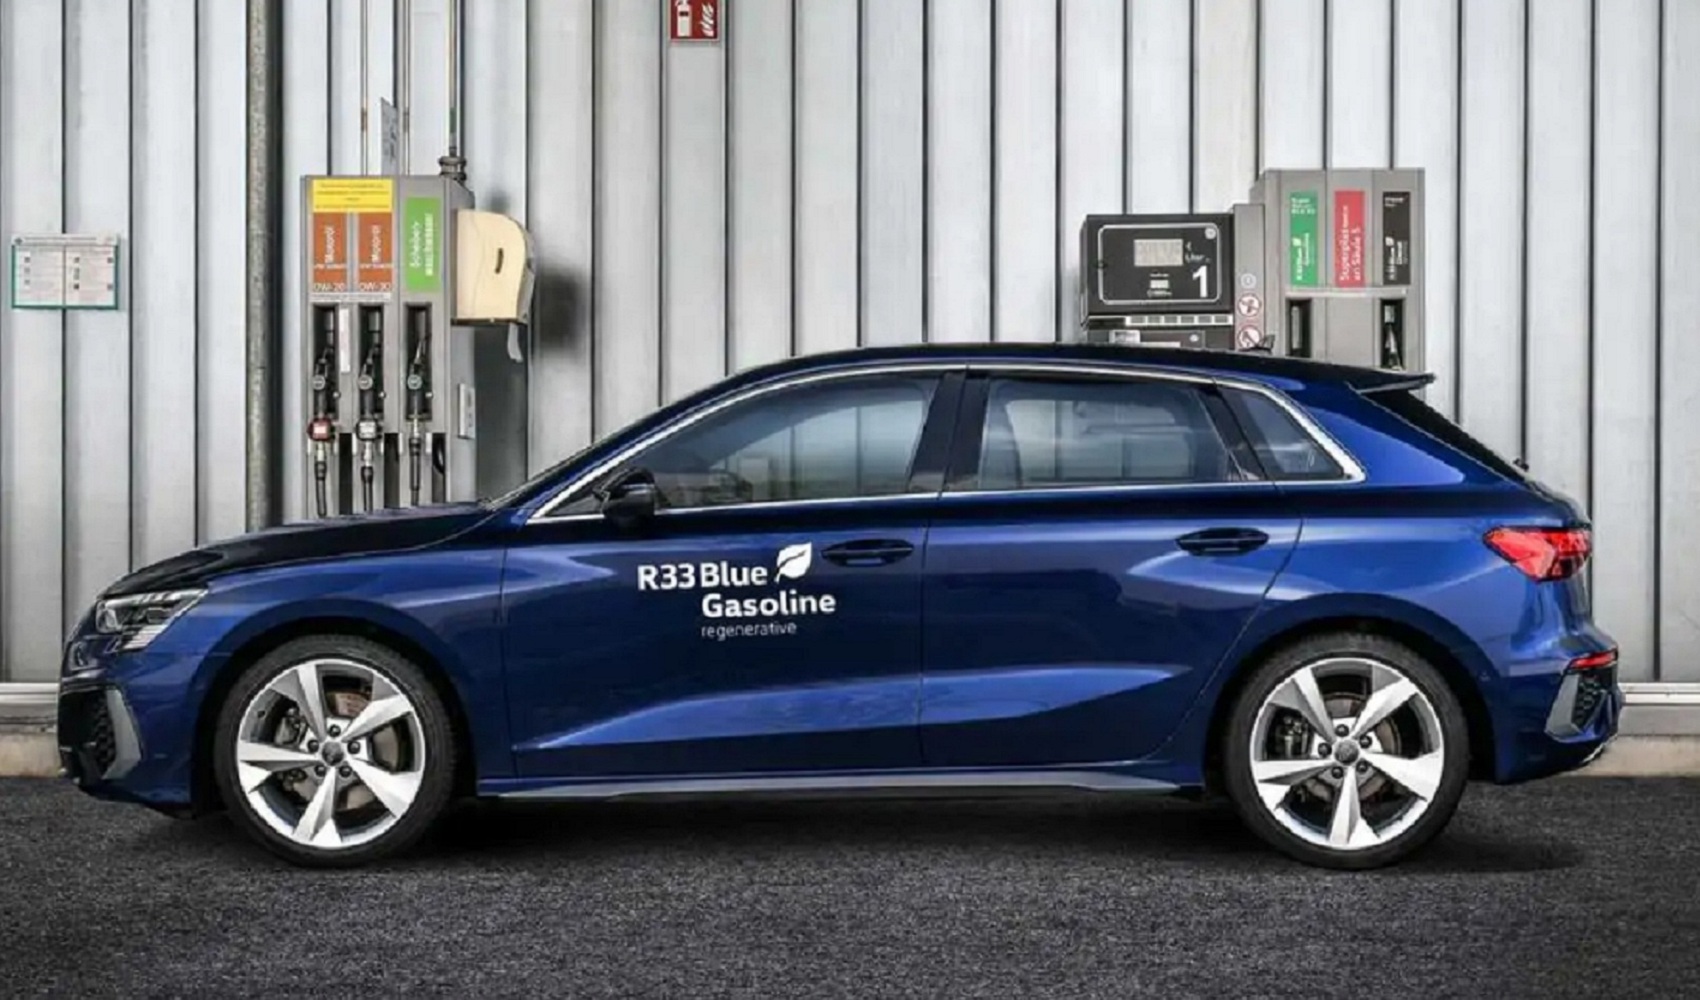 Audi phát triển xăng sinh học R33 Blue Gasoline để giảm lượng khí thải